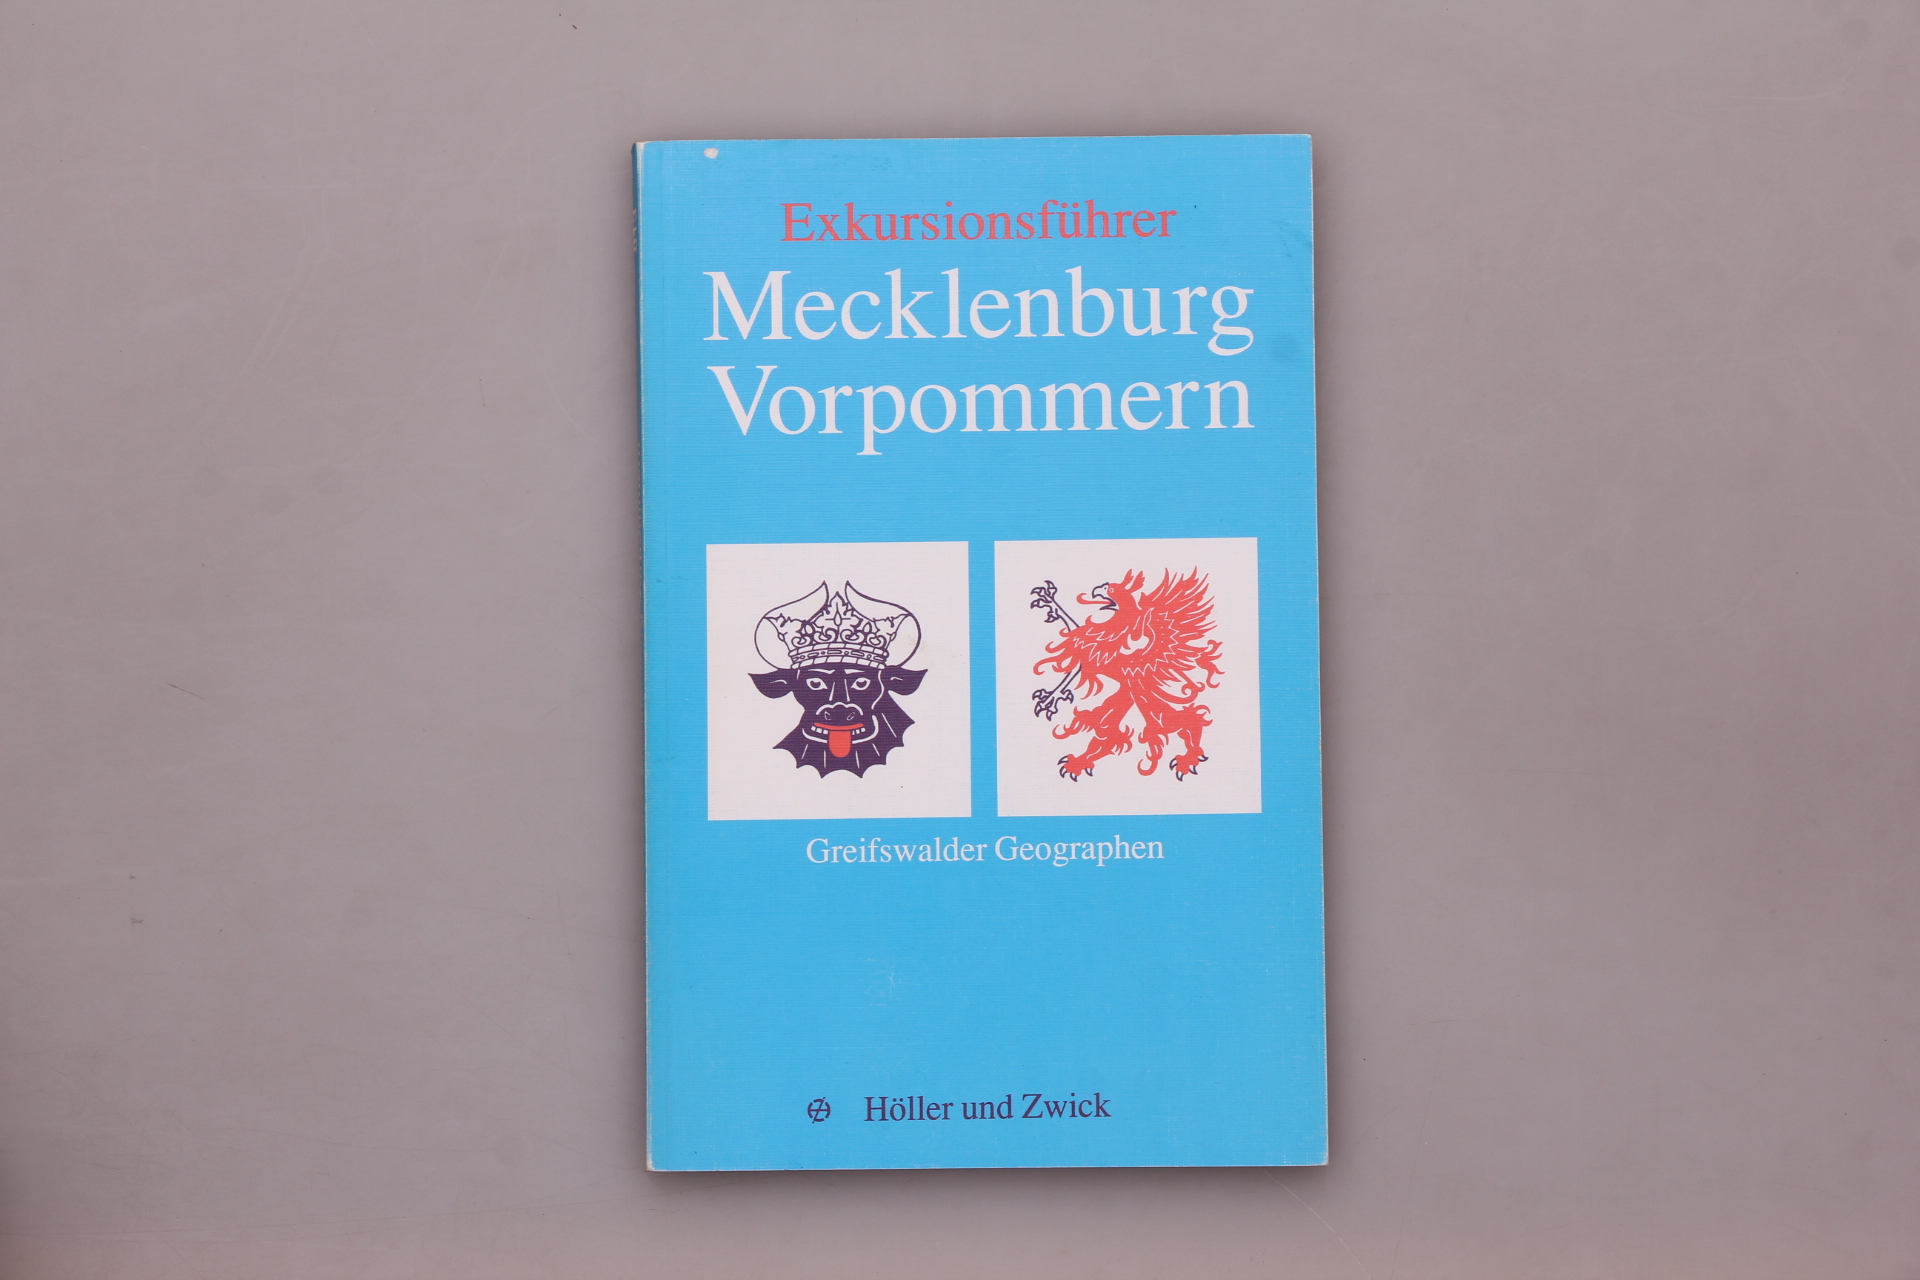 EXKURSIONSFÜHRER MECKLENBURG-VORPOMMERN. Greifwswalder Geographien - Albrecht, Gertrud